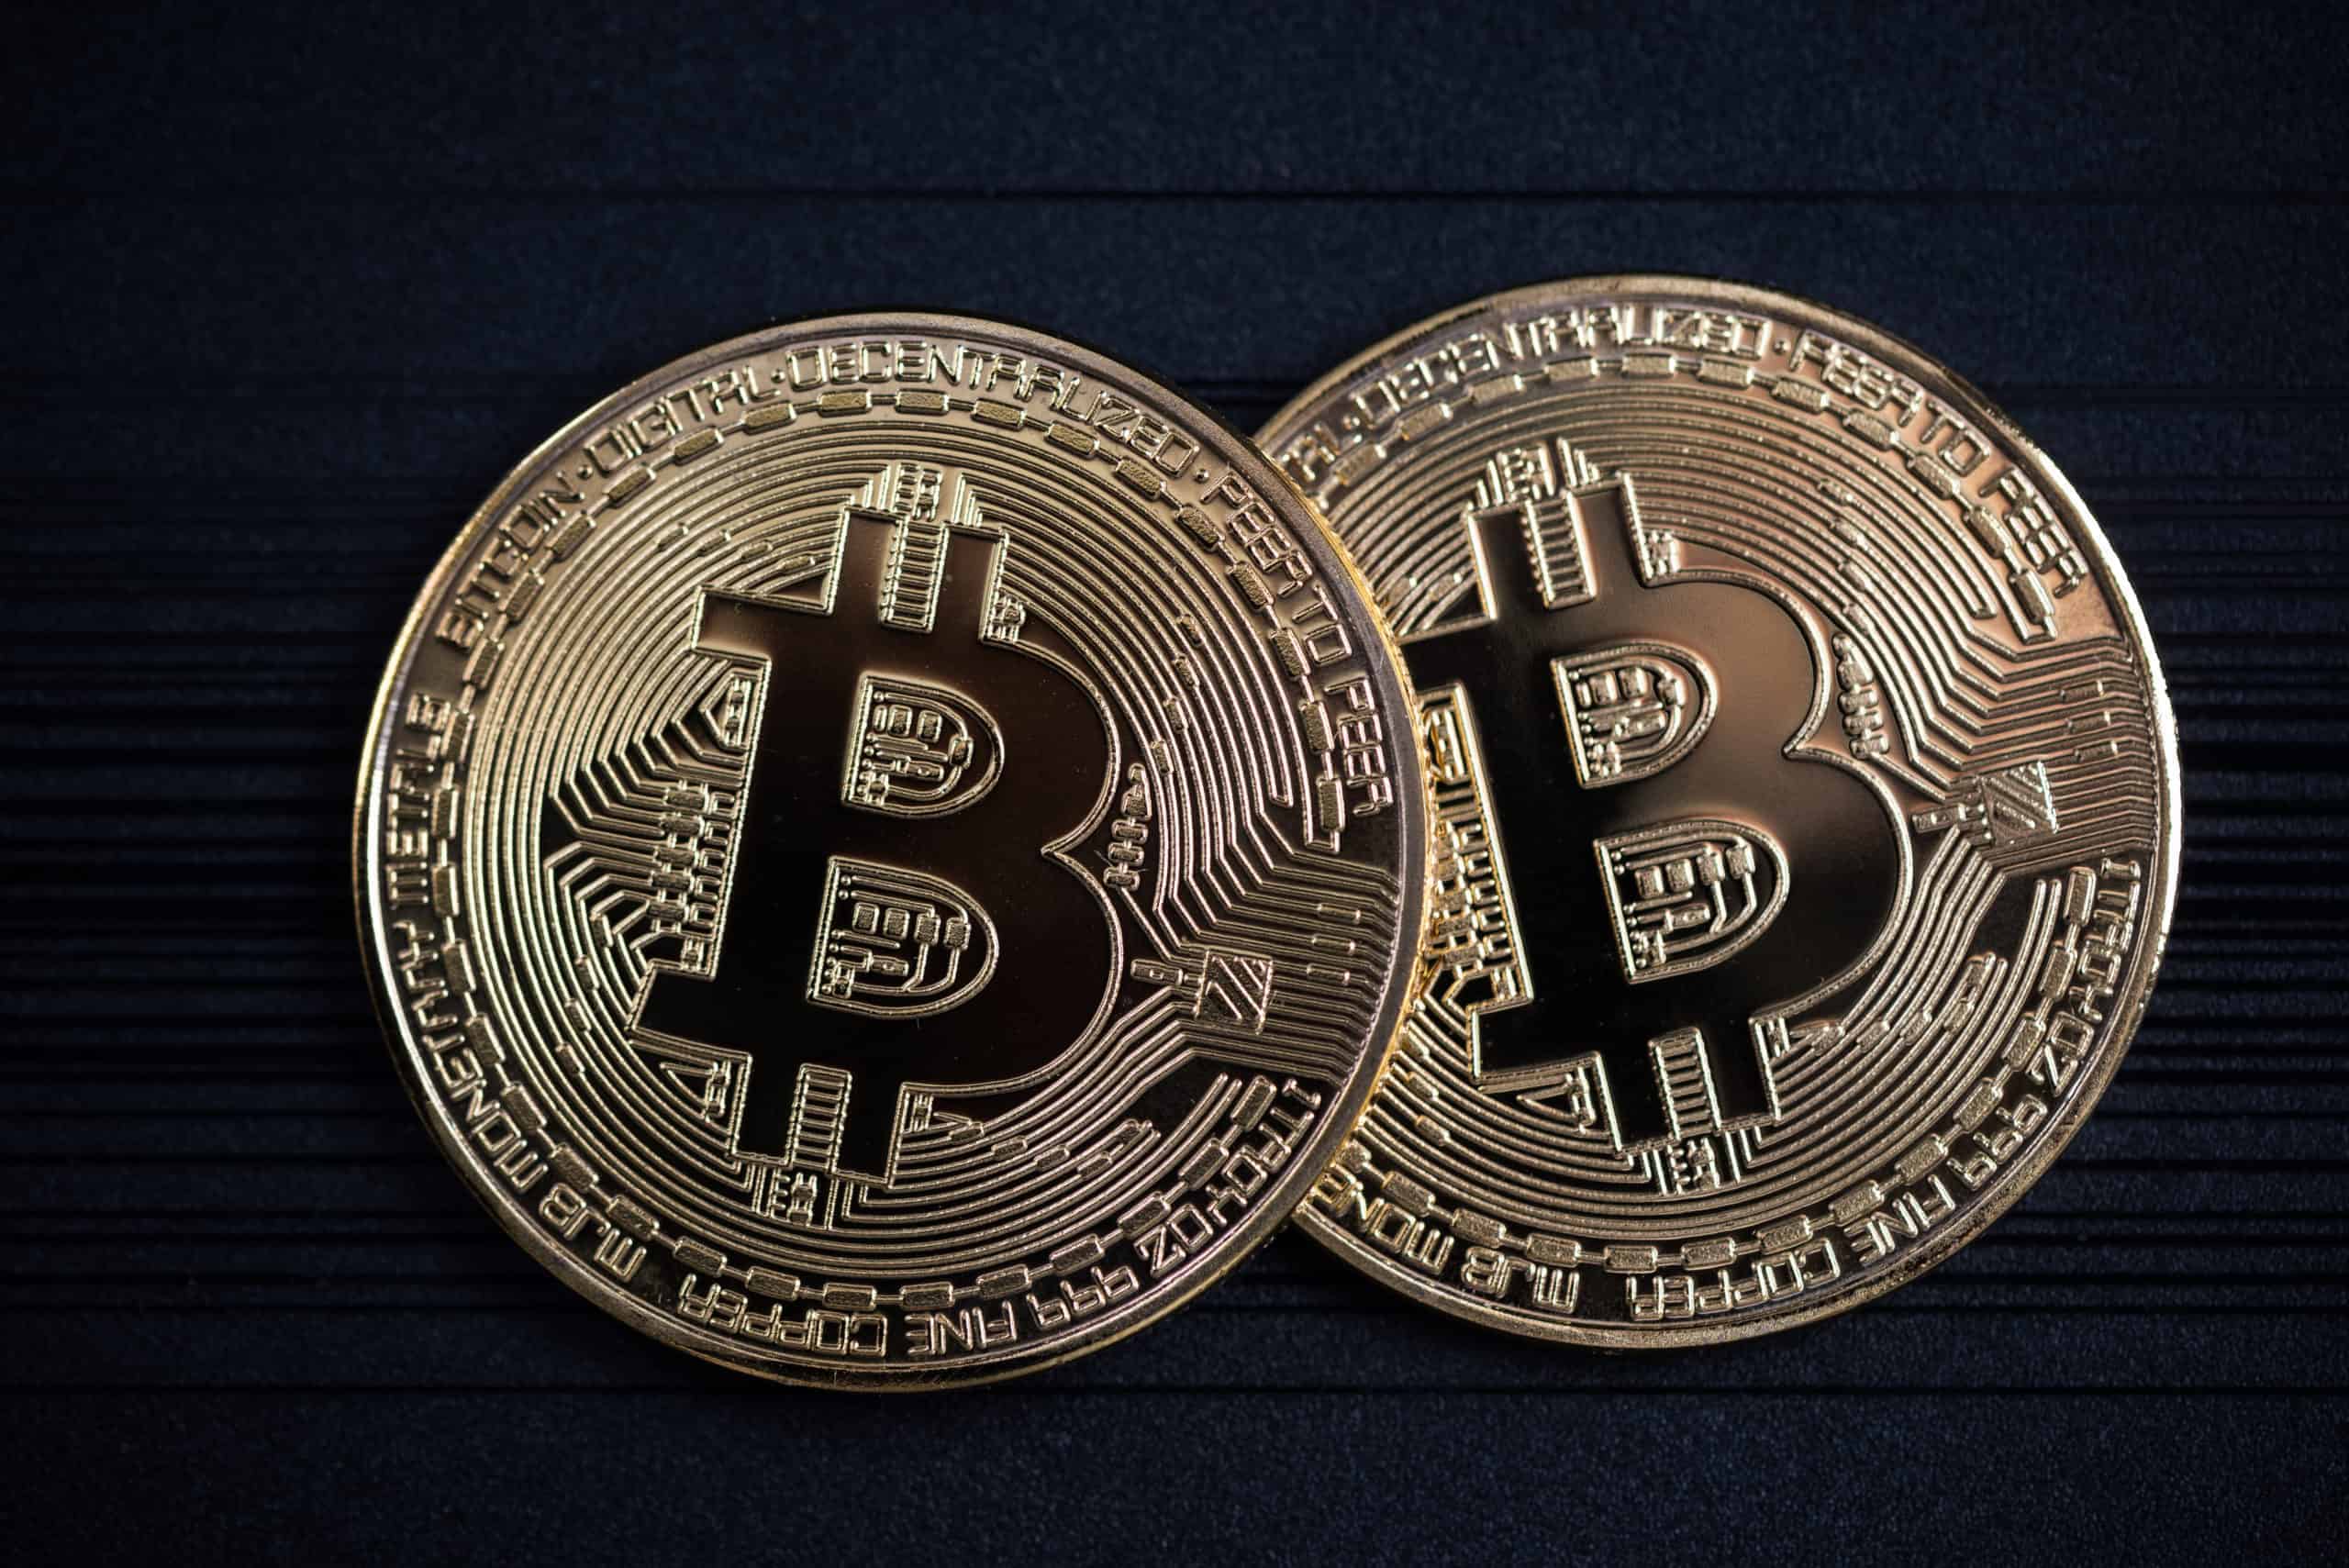 bitcoin vs bitcoin